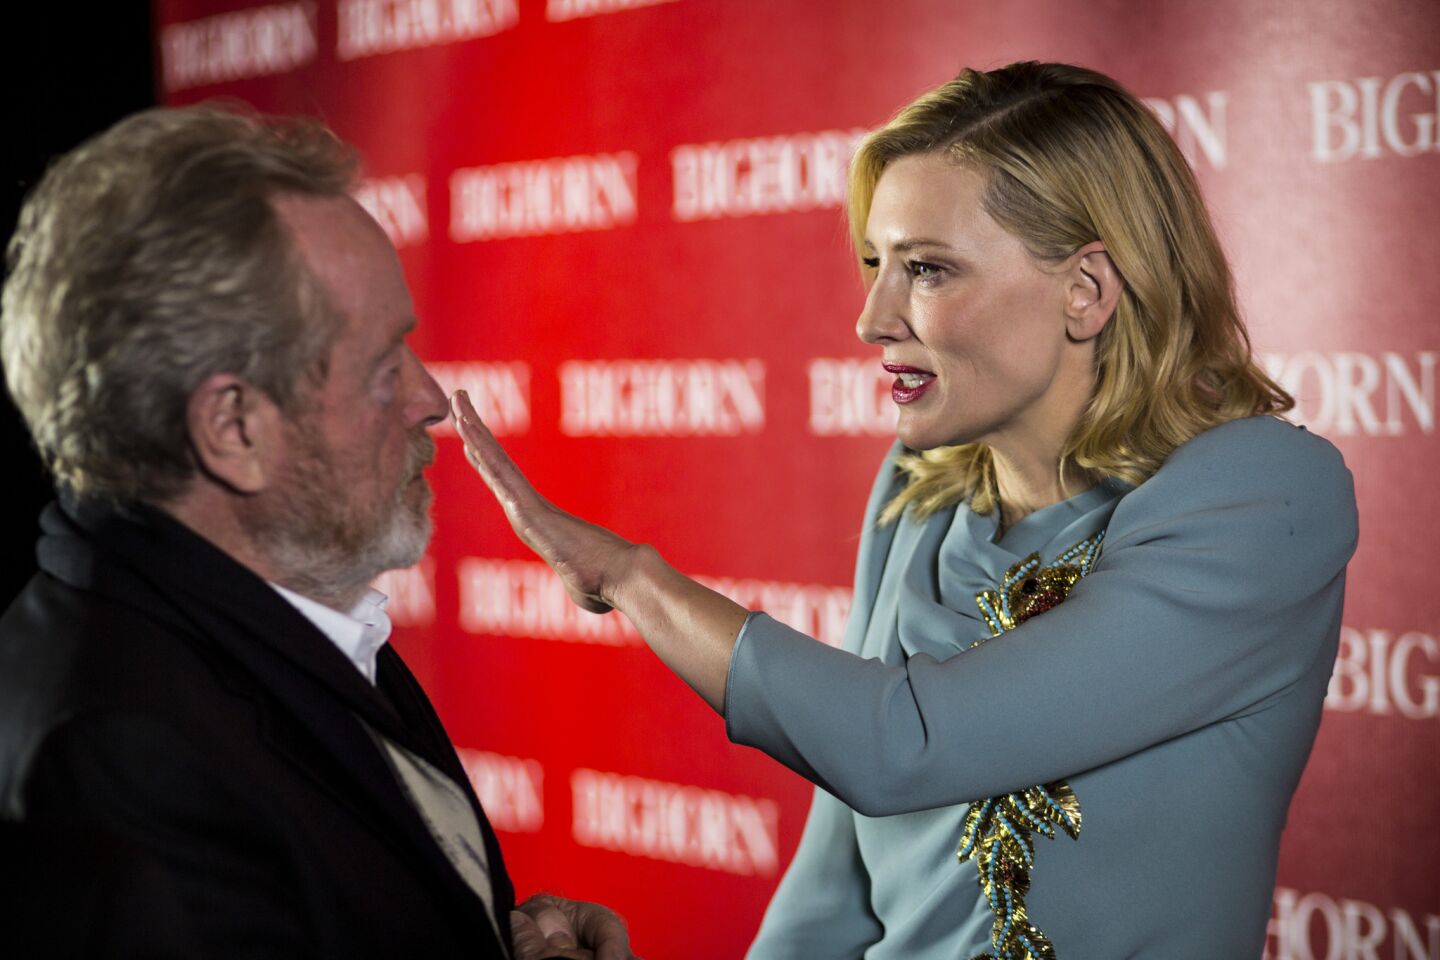 Director Ridley Scott and actress Cate Blanchett